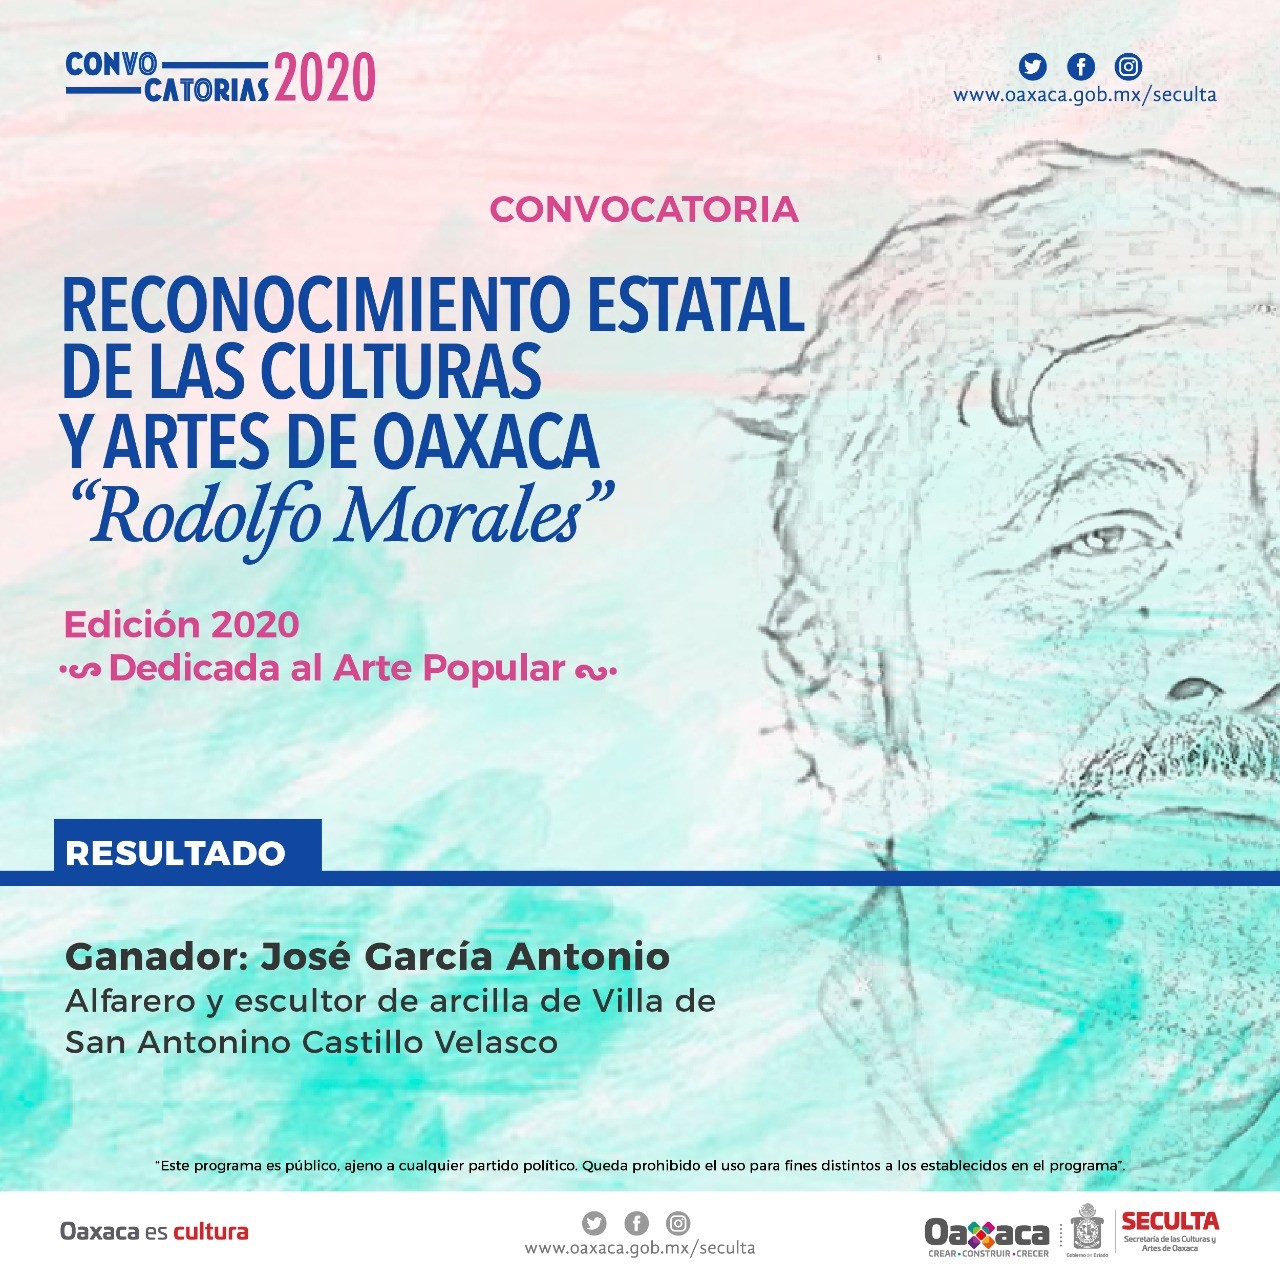 Gana José García Antonio convocatoria del Reconocimiento Estatal de las Culturas y Artes “Rodolfo Morales”